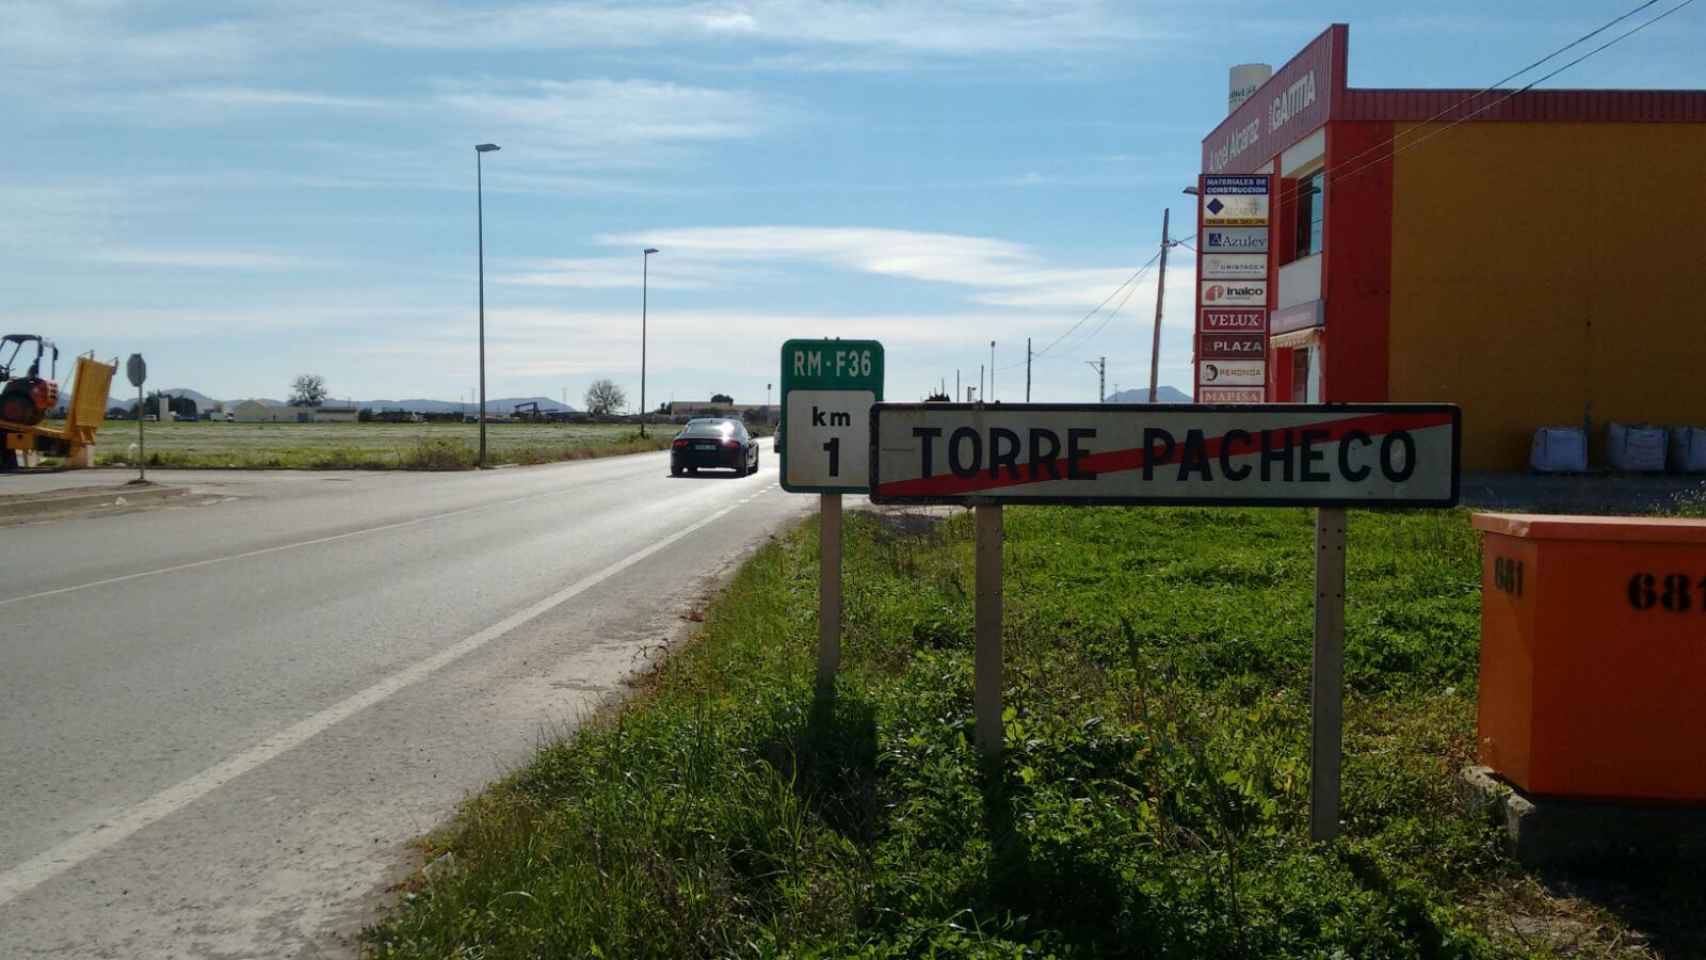 El inicio del tramo de la carretera RM-F36 en el que fallecieron los cinco chicos en Murcia